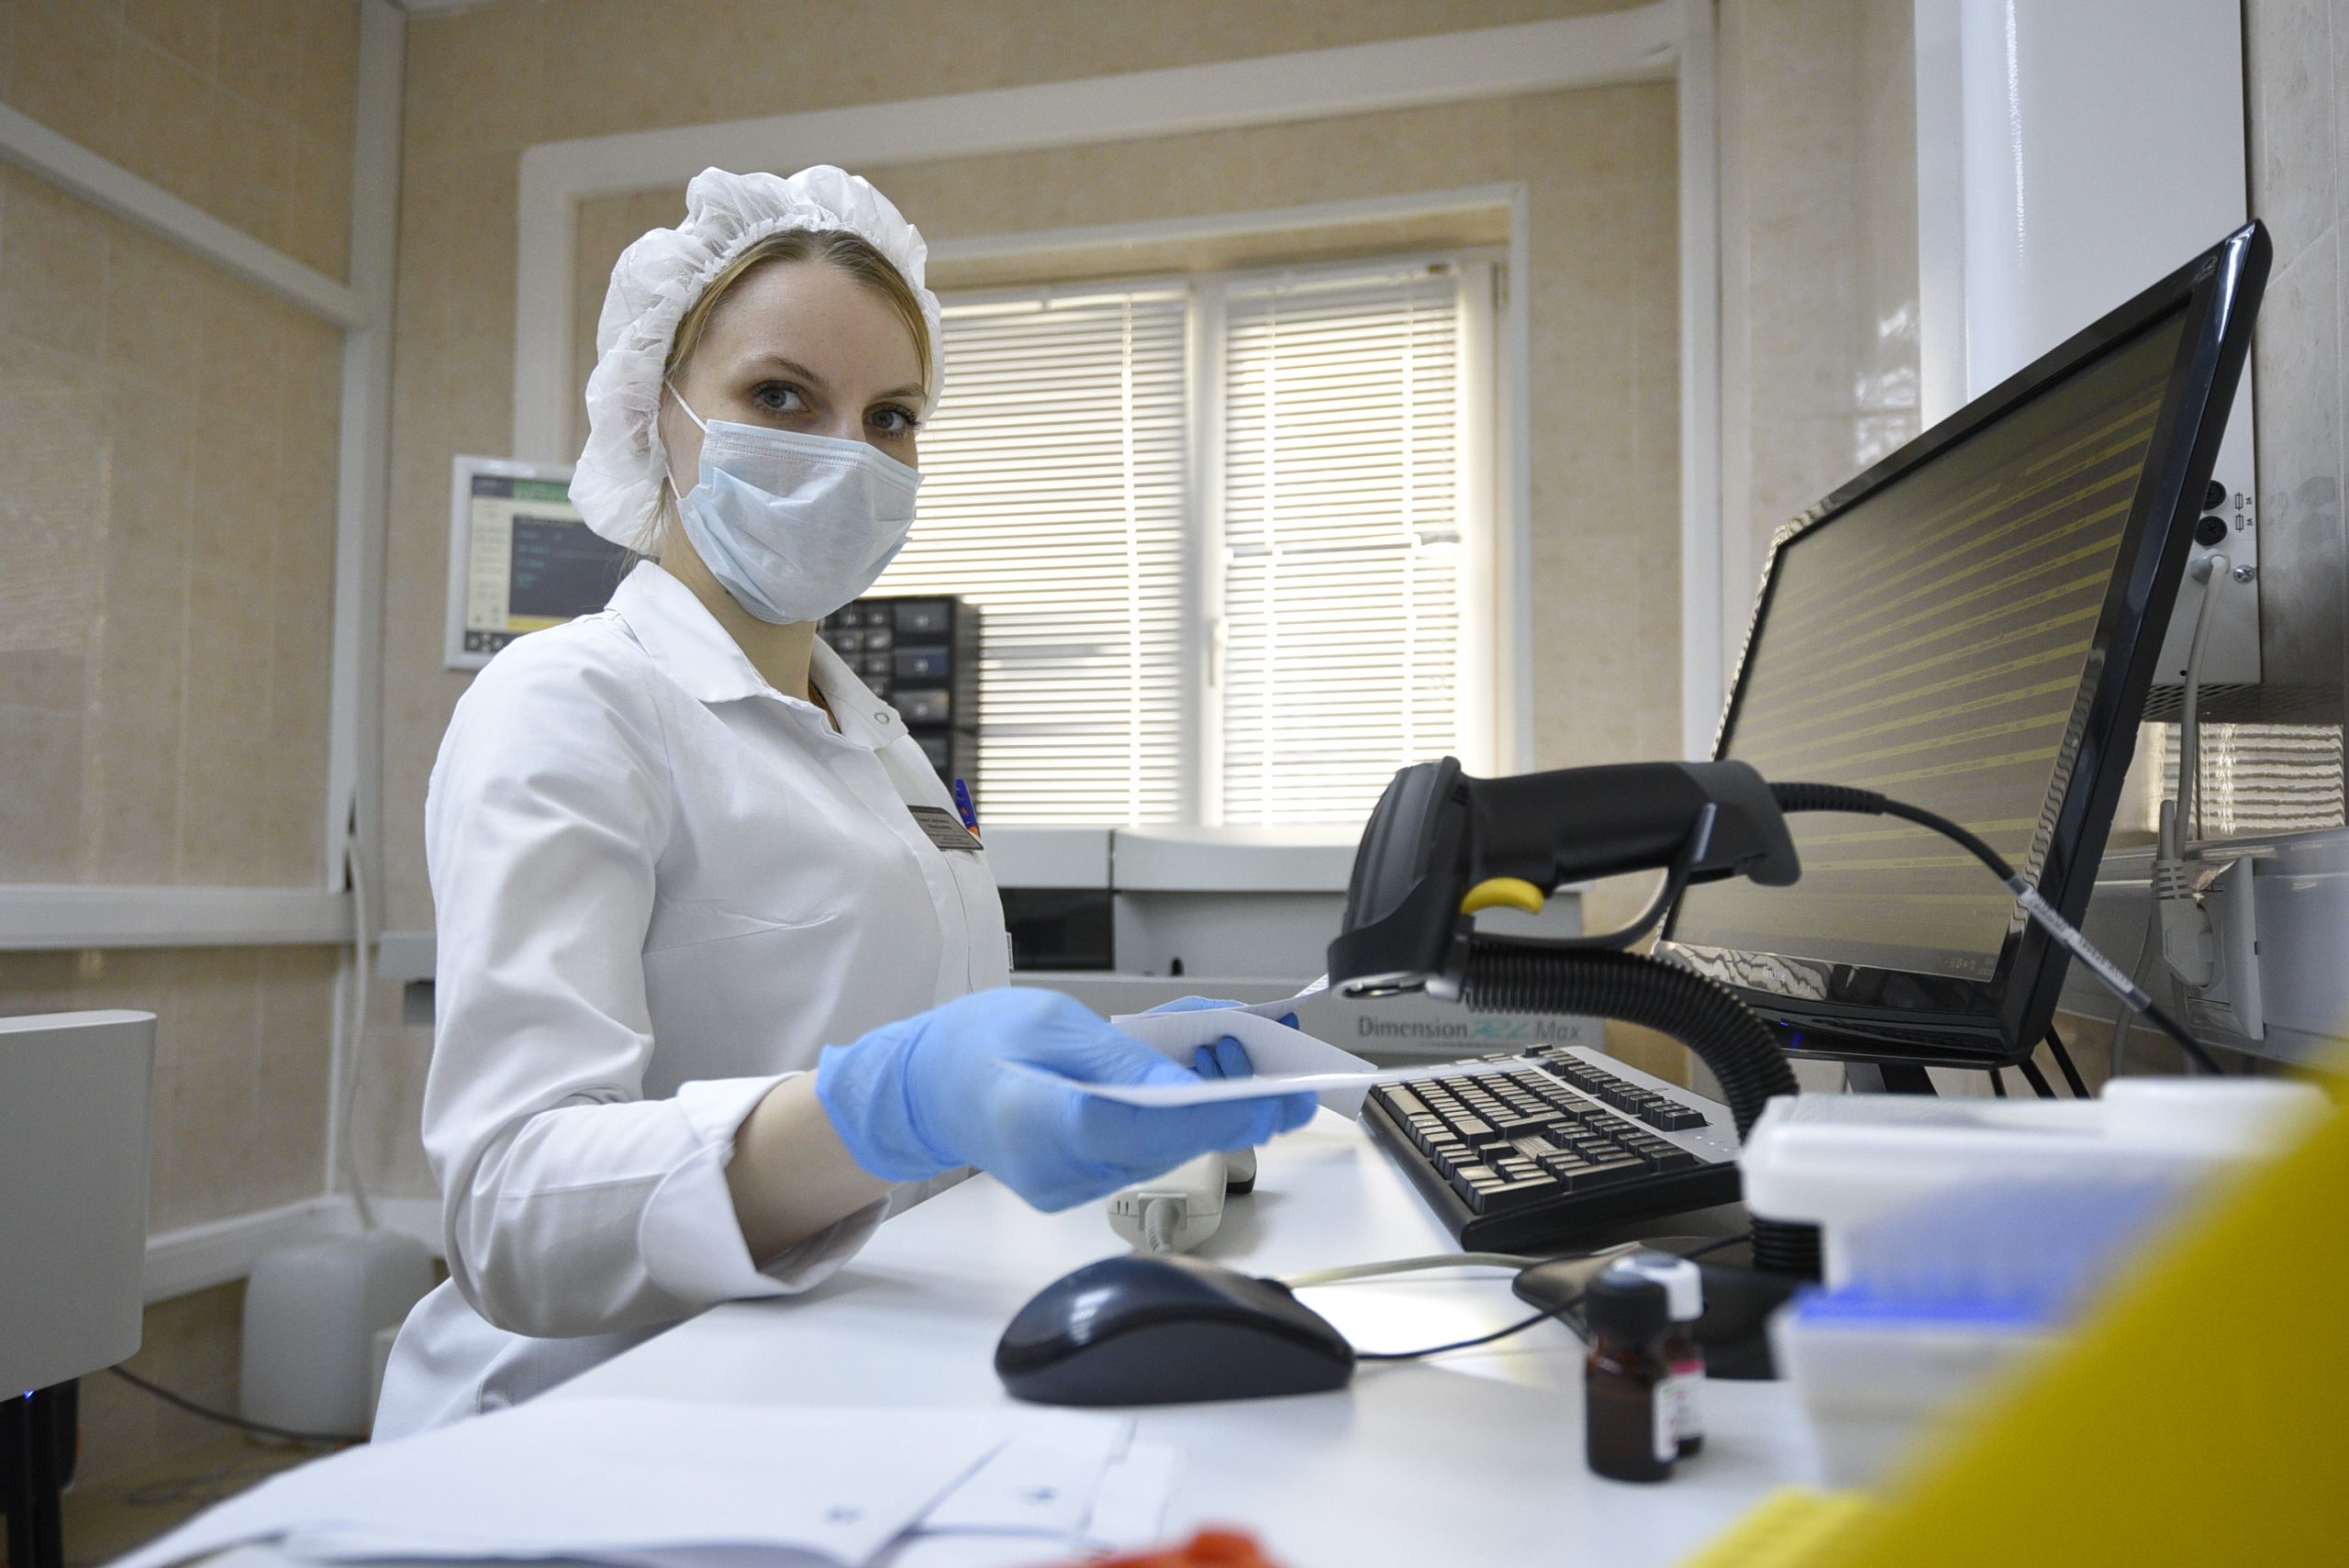 Оборудование для гемодиализа модернизировали в больнице имени Сергея Юдина